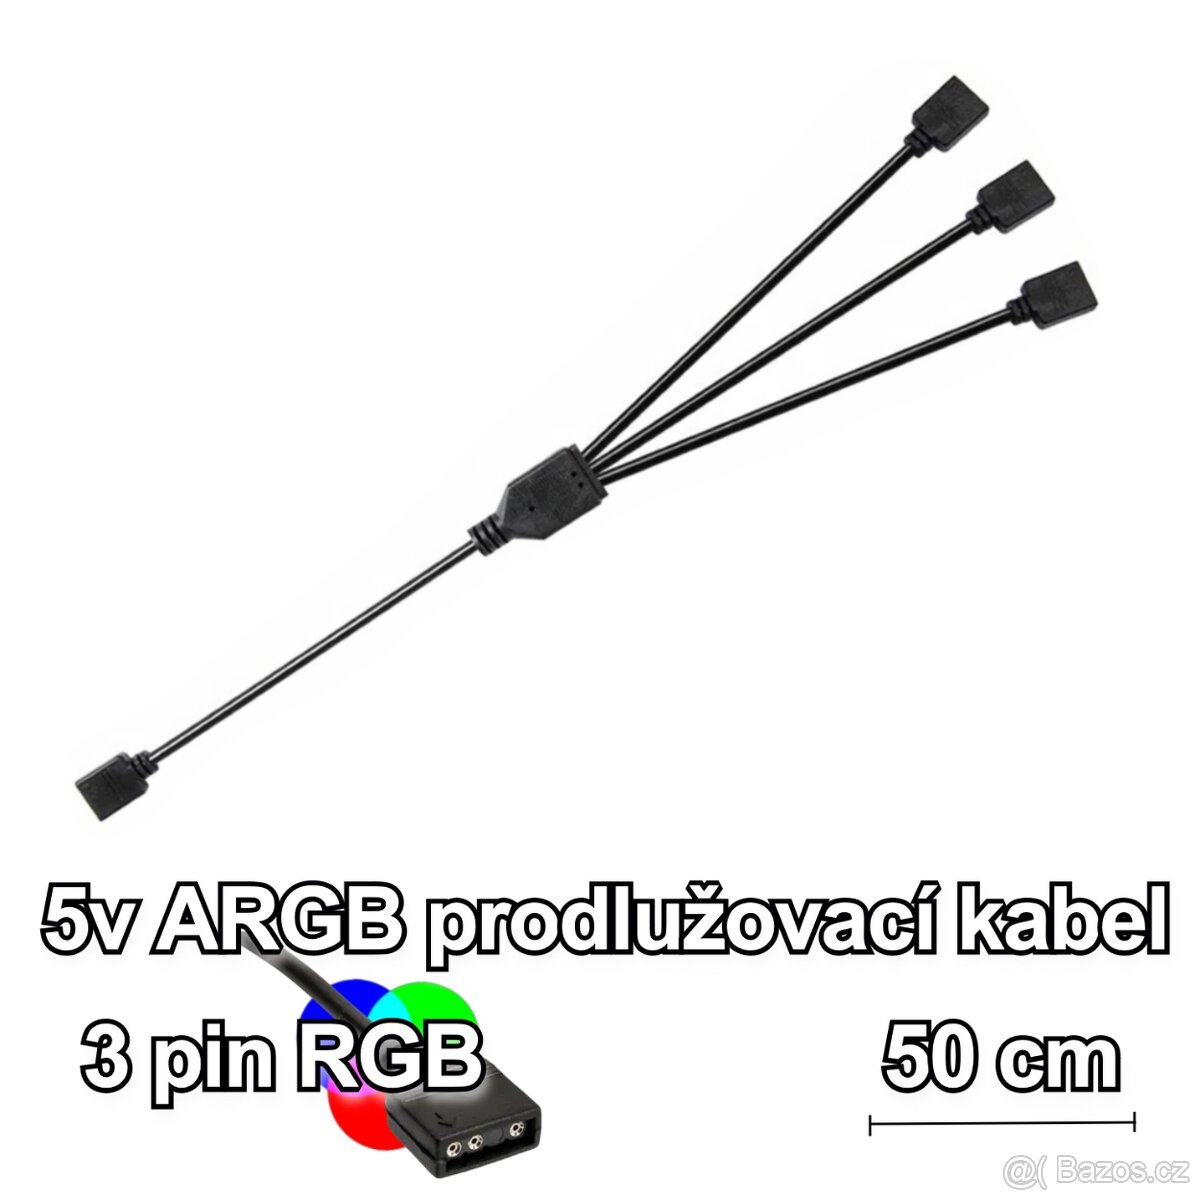 Rozbočovací/prodlužovací kabel 50 cm 5V 3 pin aRGB pro RGB